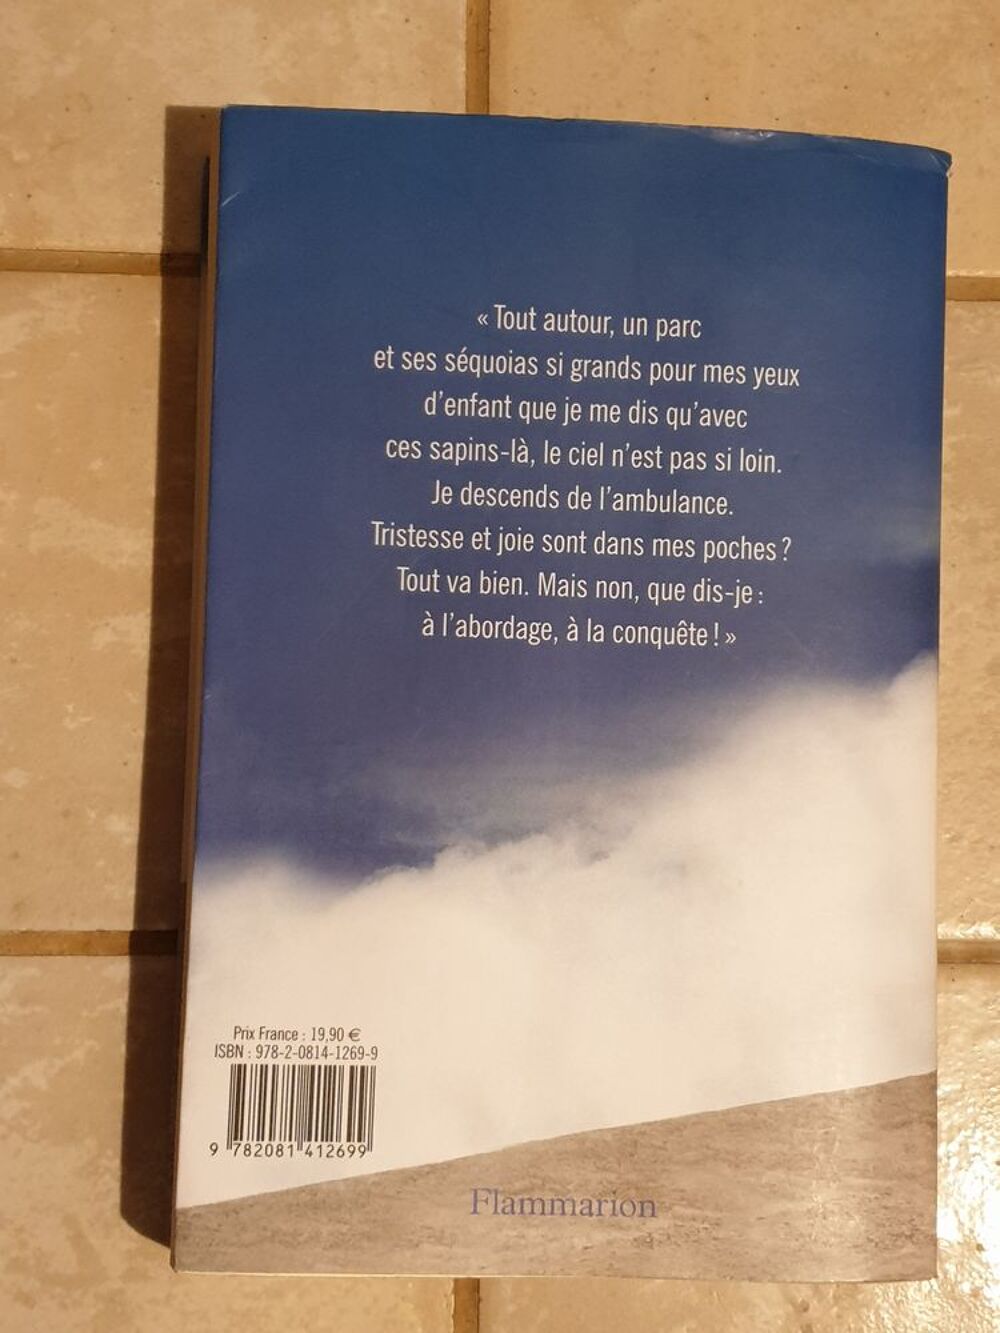 Une Vie Minuscule - Krhajac Philippe
Marseille 9 eme
Livres et BD